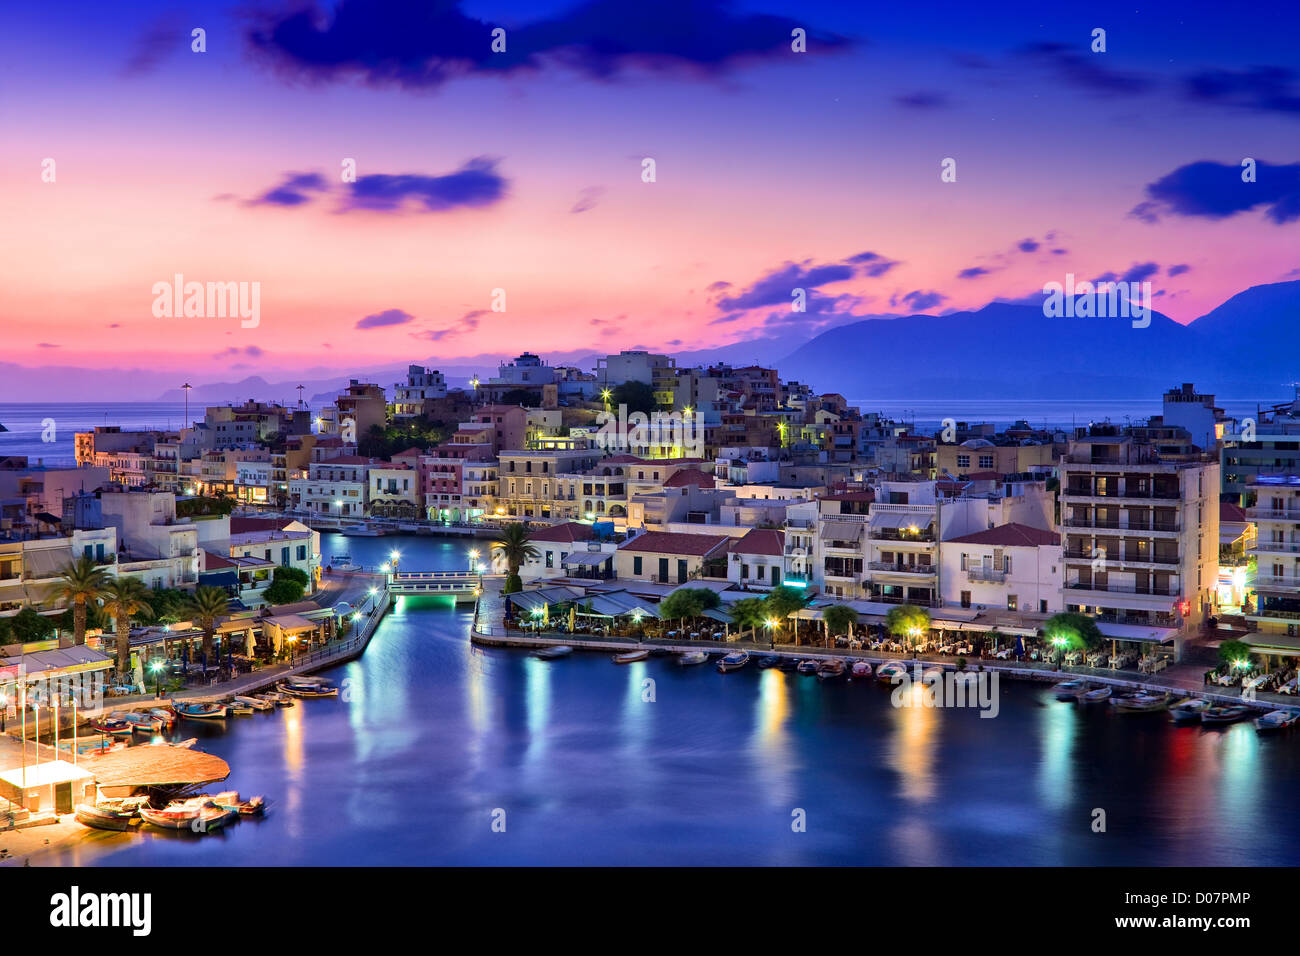 Agios Nikolaos. Pittoresca cittadina nella parte orientale dell'isola di Creta costruita sul lato nord-ovest della tranquilla baia di Mirabello. Foto Stock